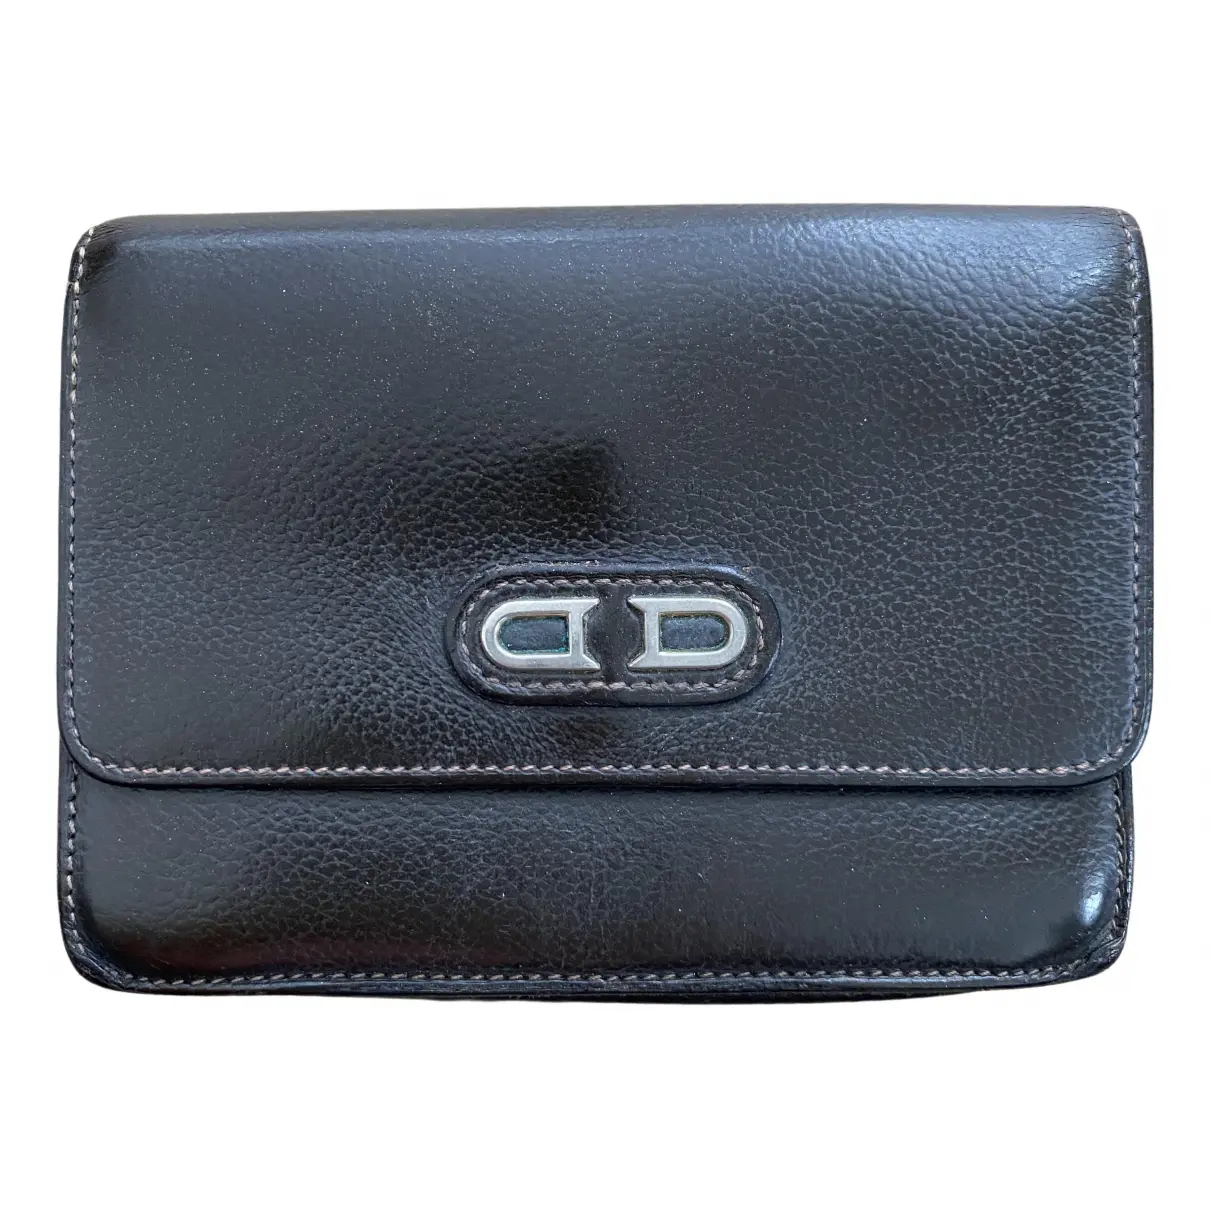 Leather wallet Delvaux - Vintage